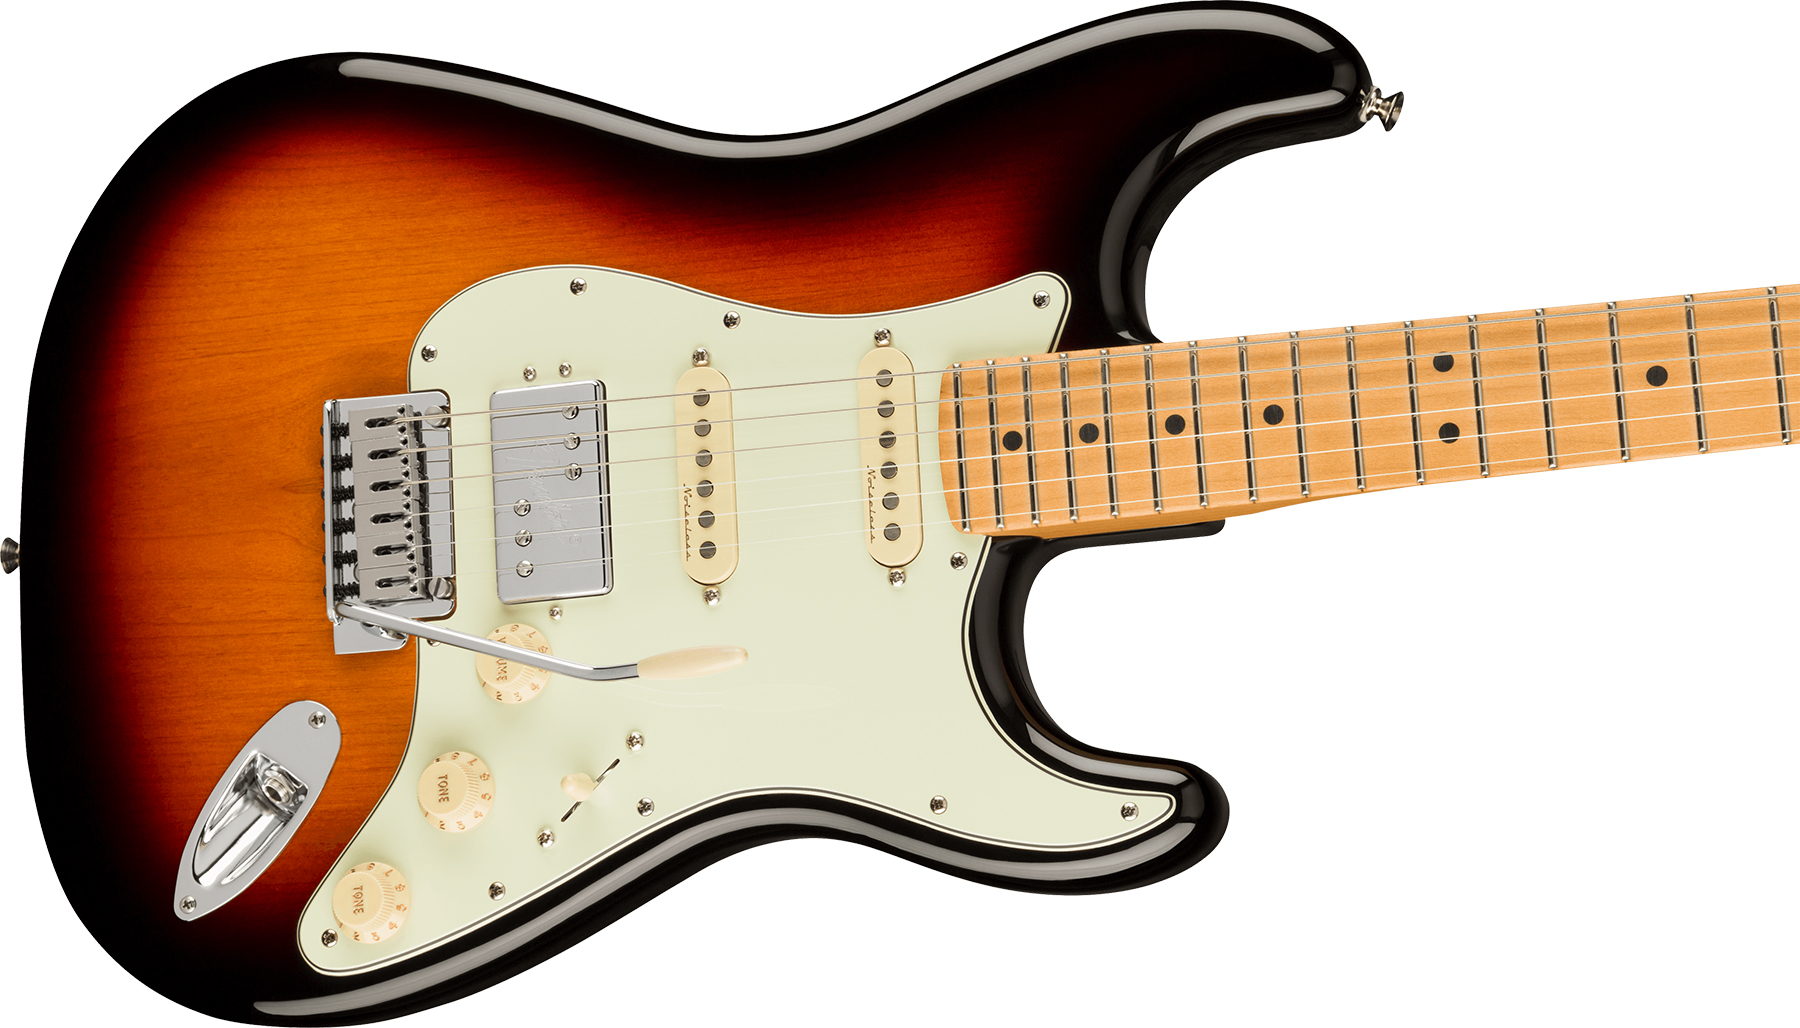 Fender Strat Player Plus Mex Hss Trem Mn - 3-color Sunburst - Guitarra eléctrica con forma de str. - Variation 2